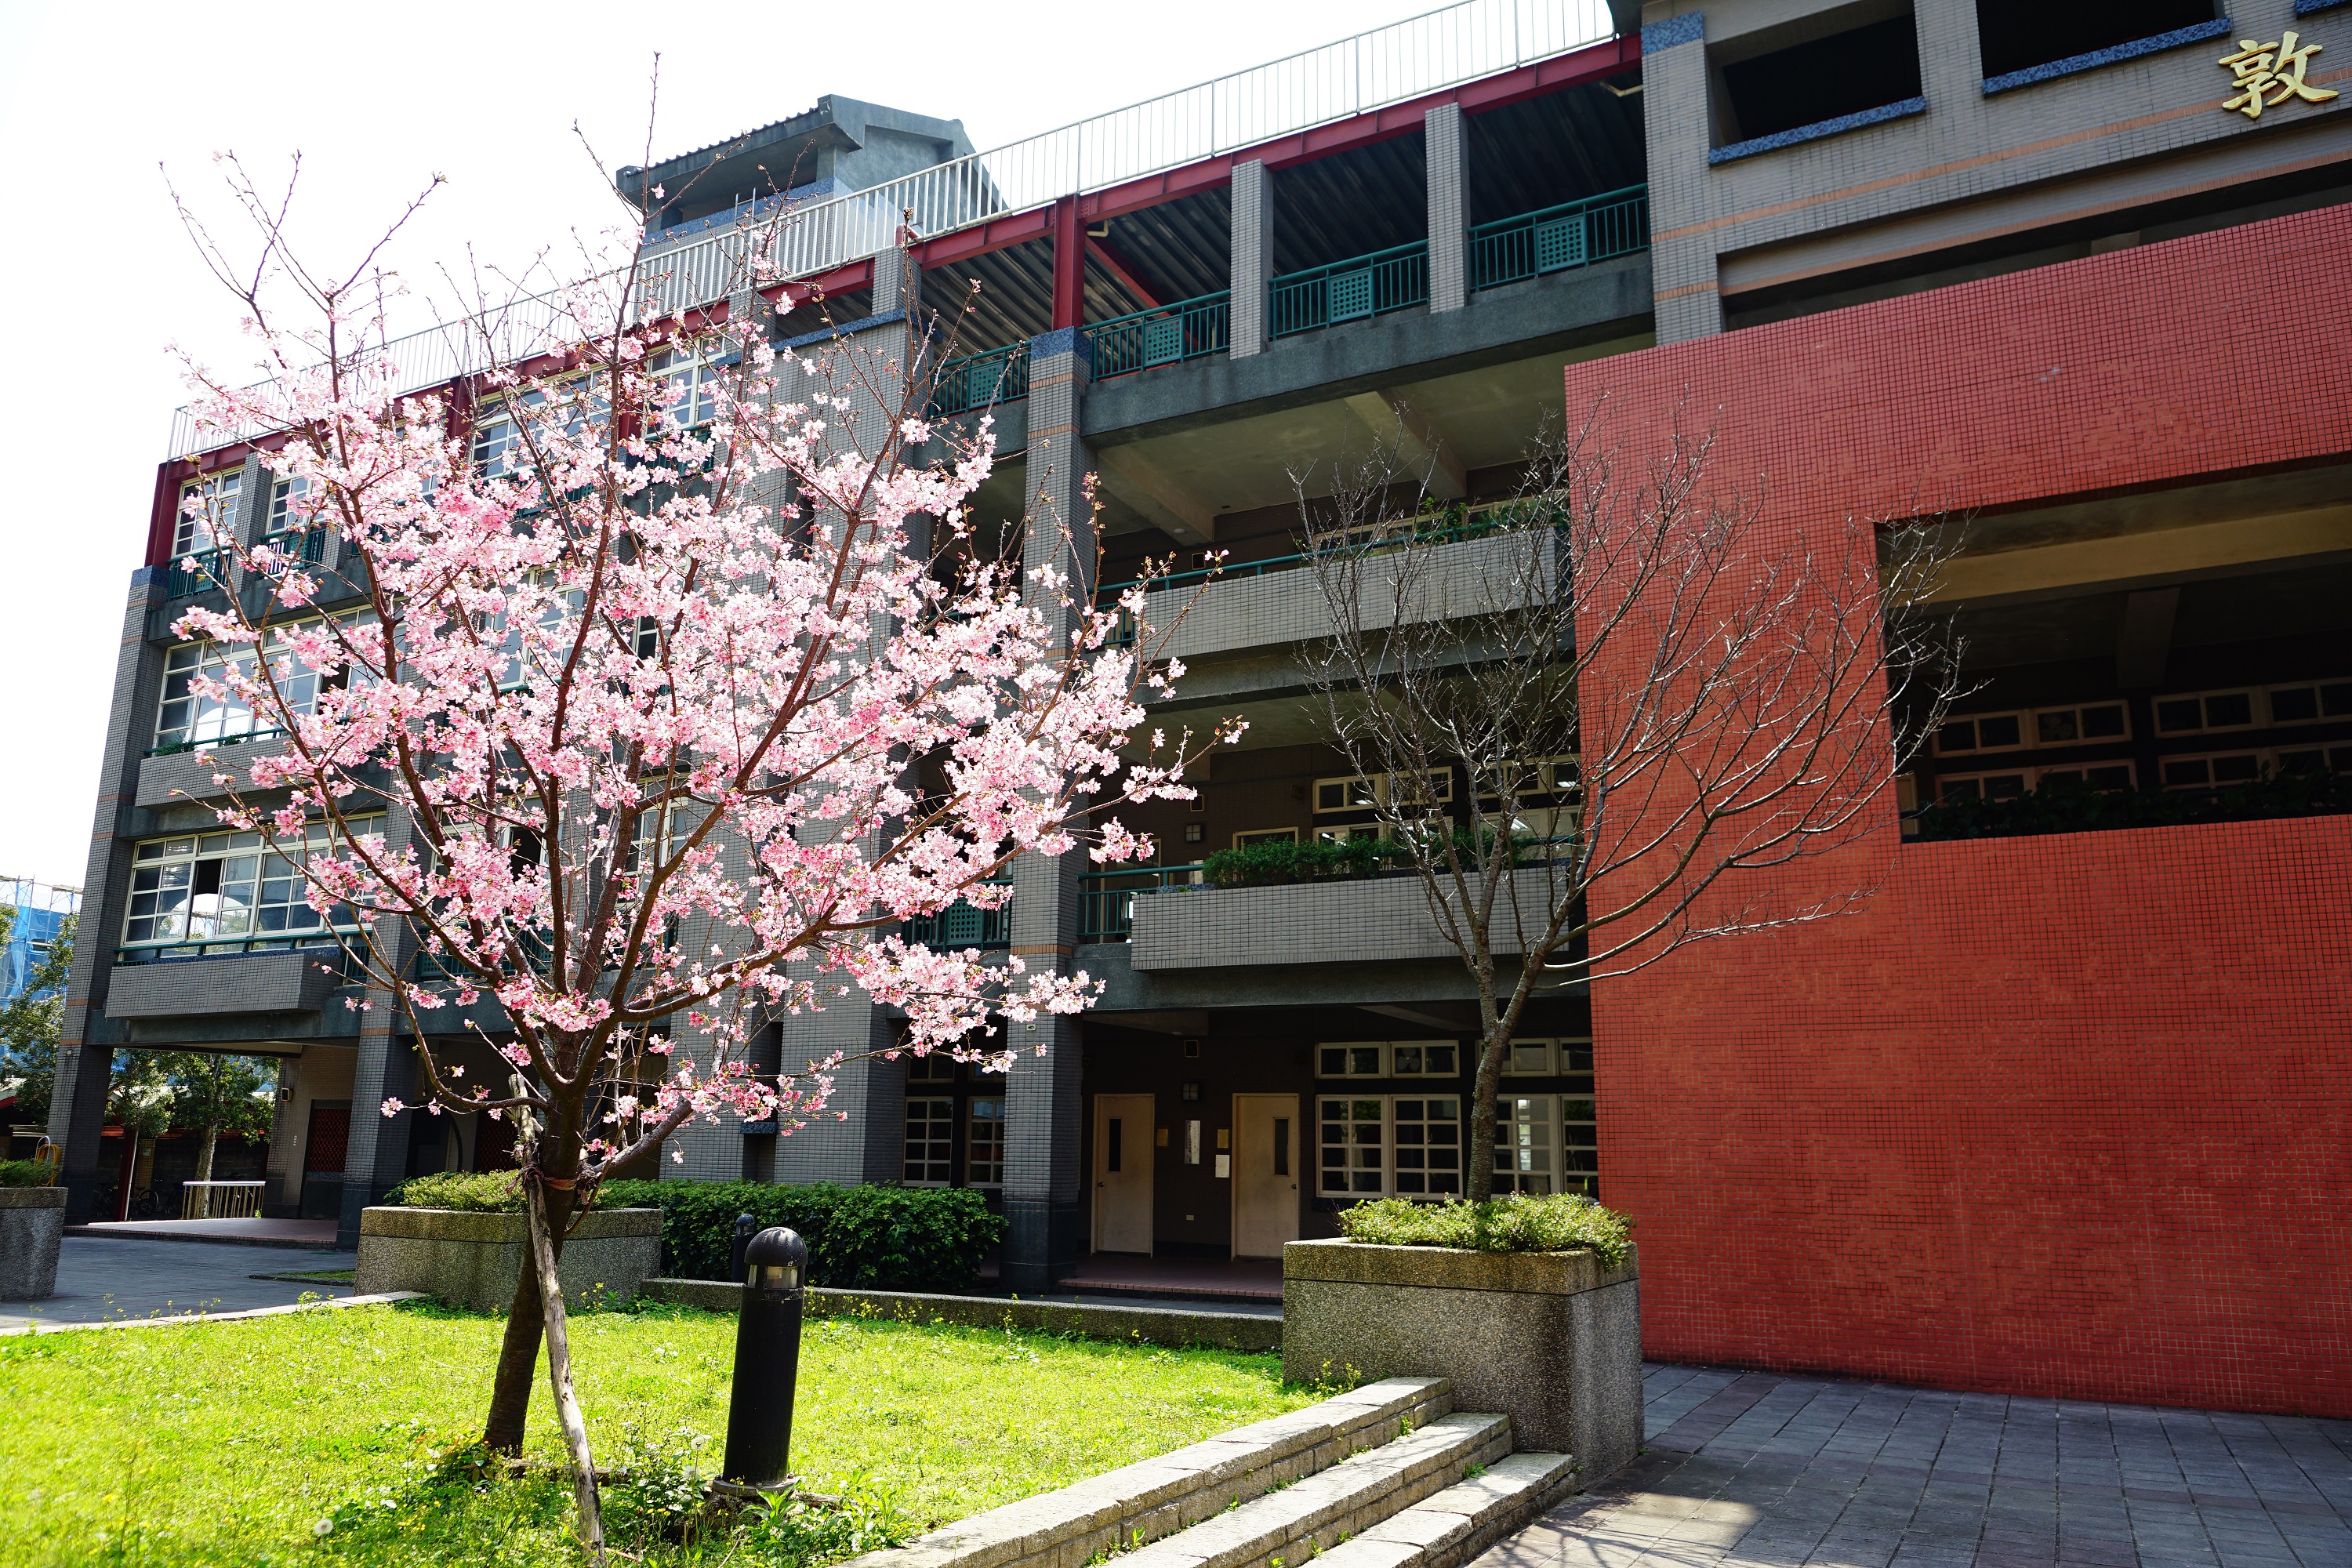 中庭花園綻放的櫻花樹